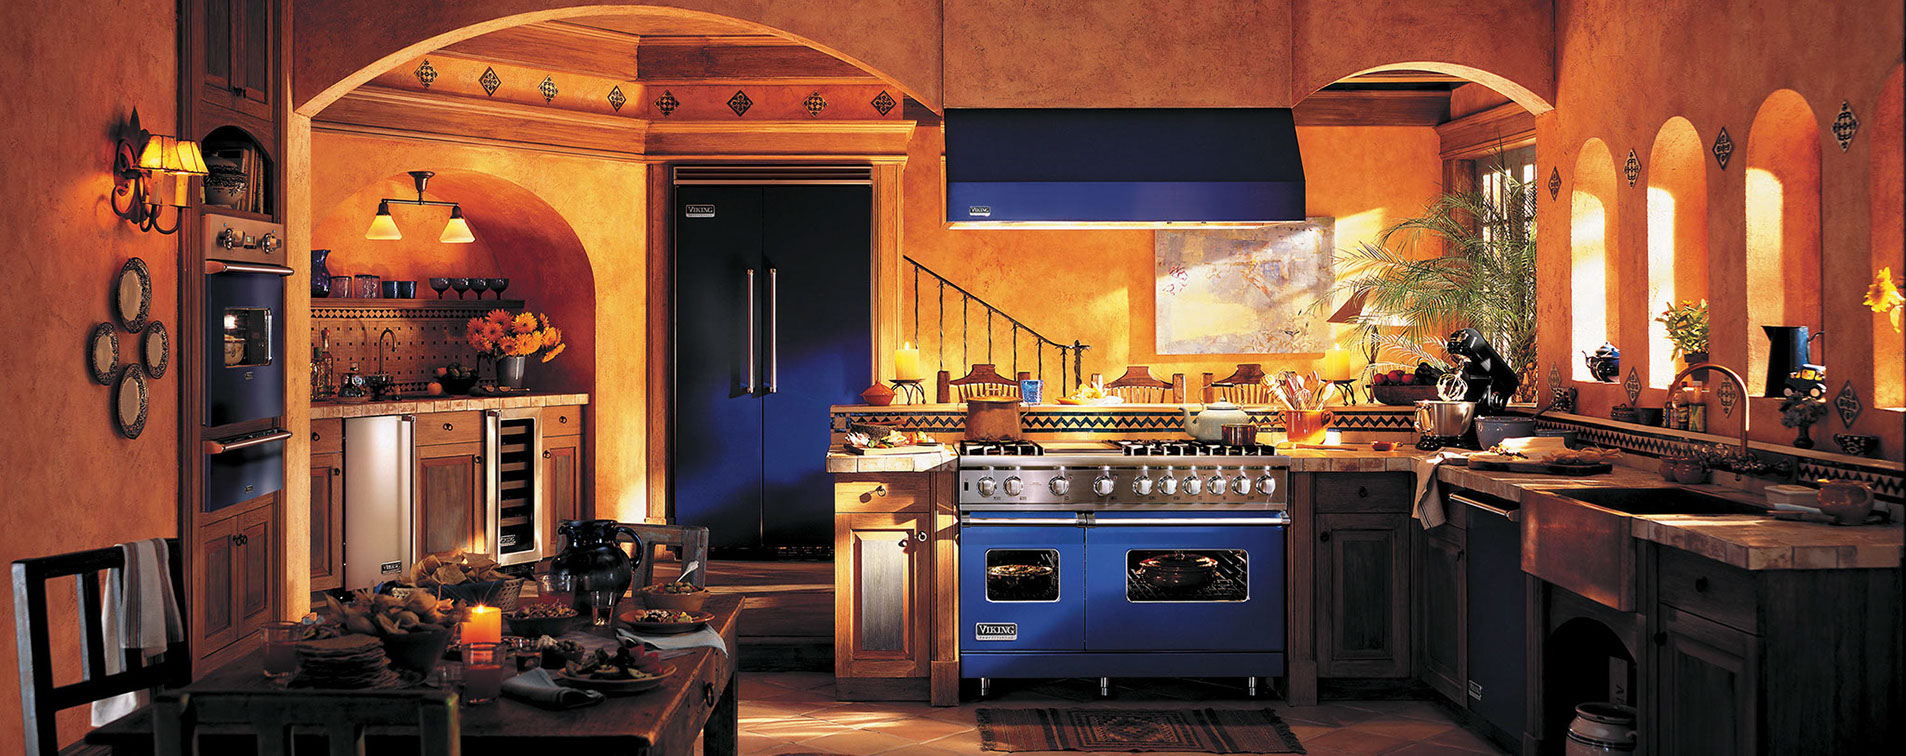 http://douglascabinetdesigns.com/images/cobalt_kitchen-lr.jpg